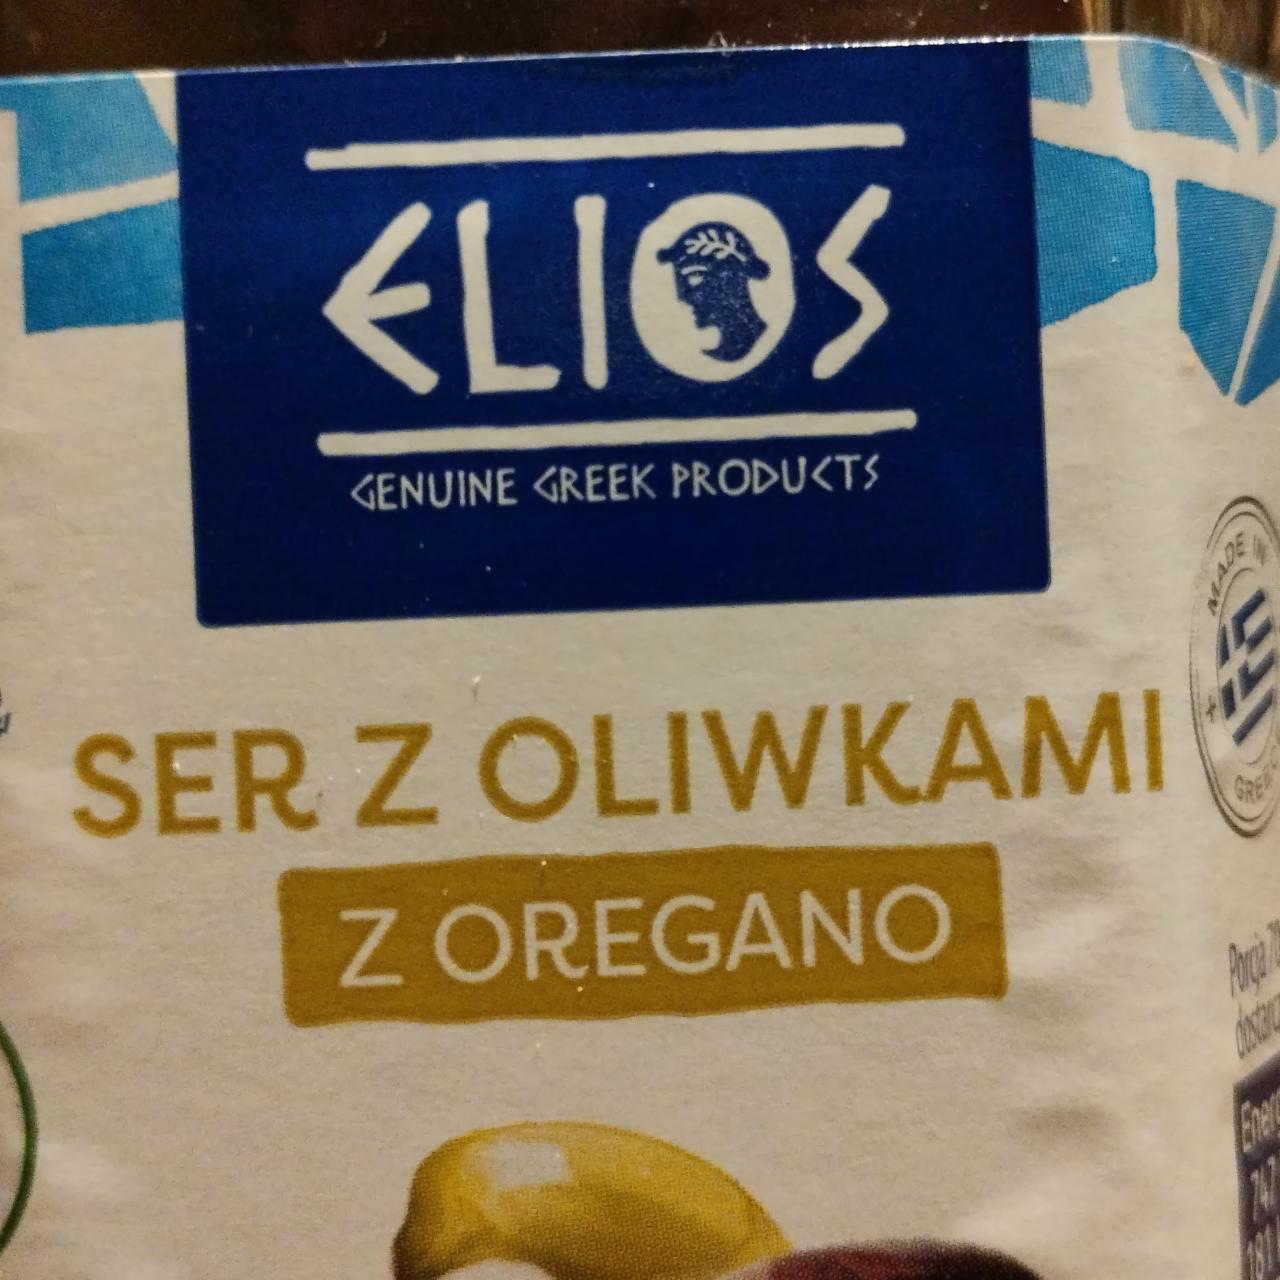 Zdjęcia - Ser z oliwkami z oregano Elios